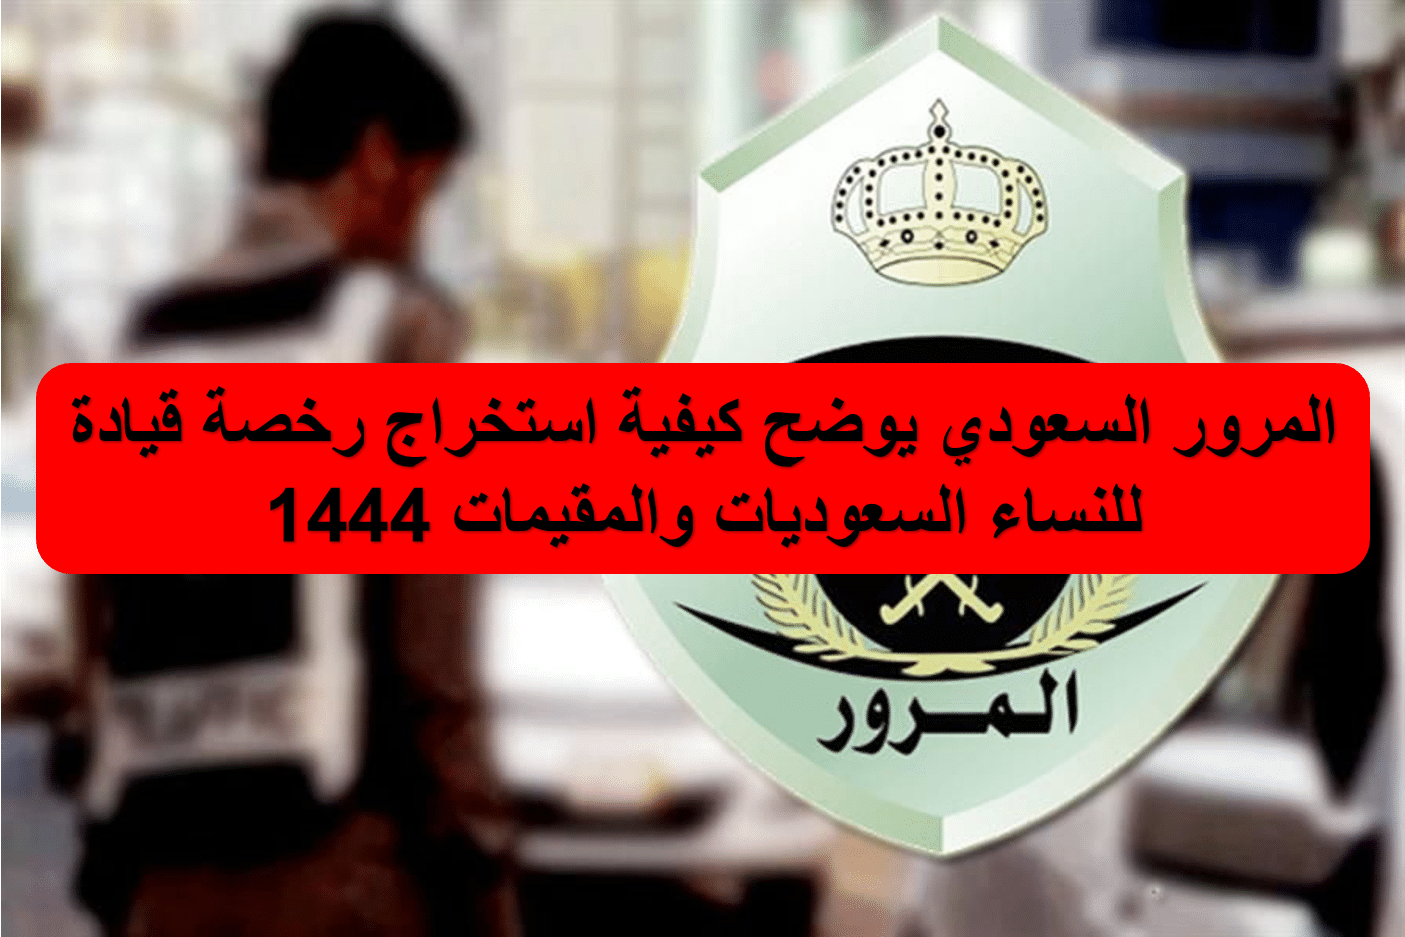 المرور السعودي يوضح كيفية استخراج رخصة قيادة للنساء السعوديات والمقيمات 1444